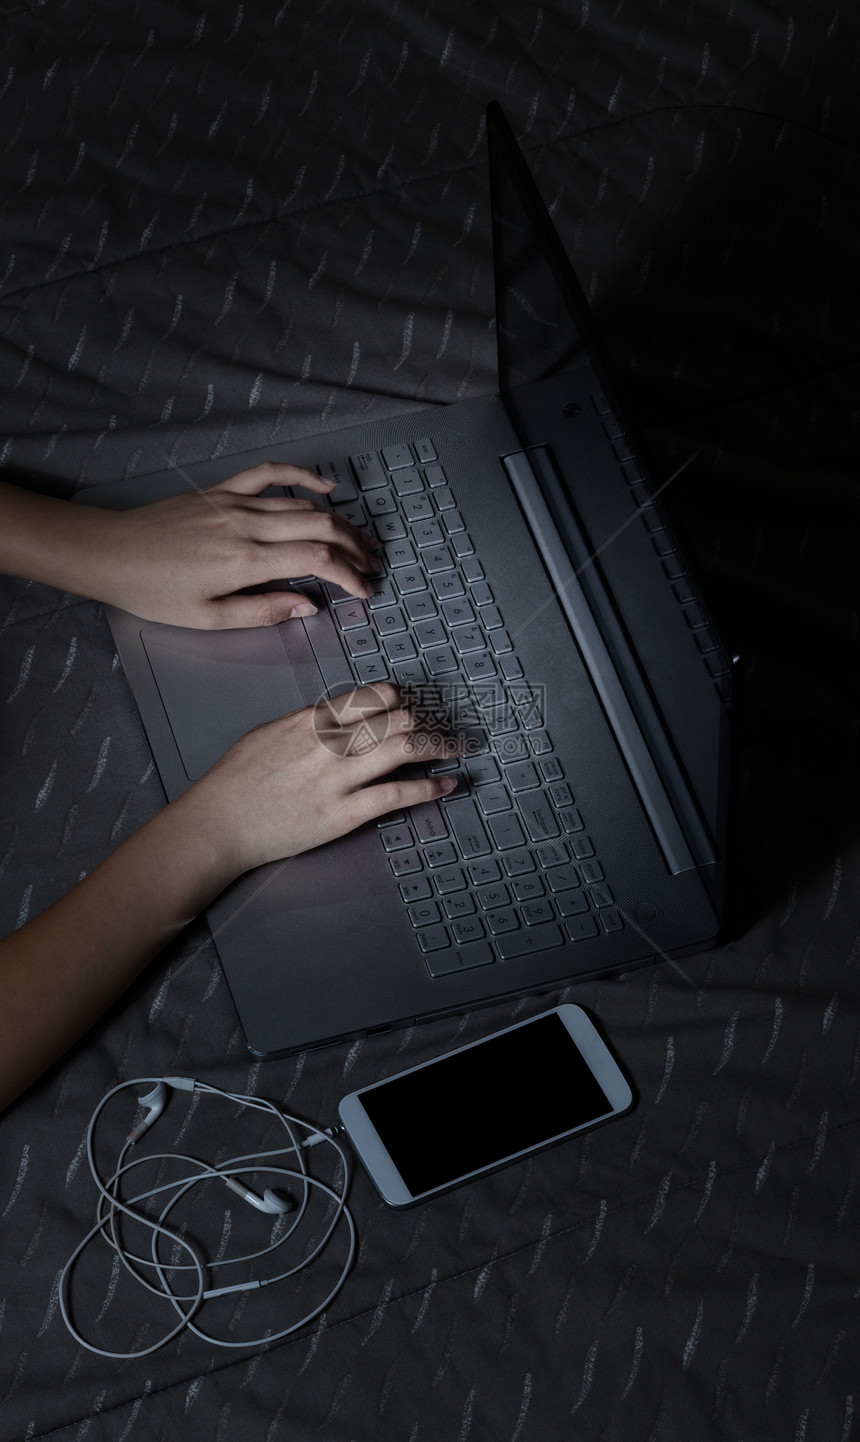 夜间在床上用手打字和电脑键盘受轻效应影响图片